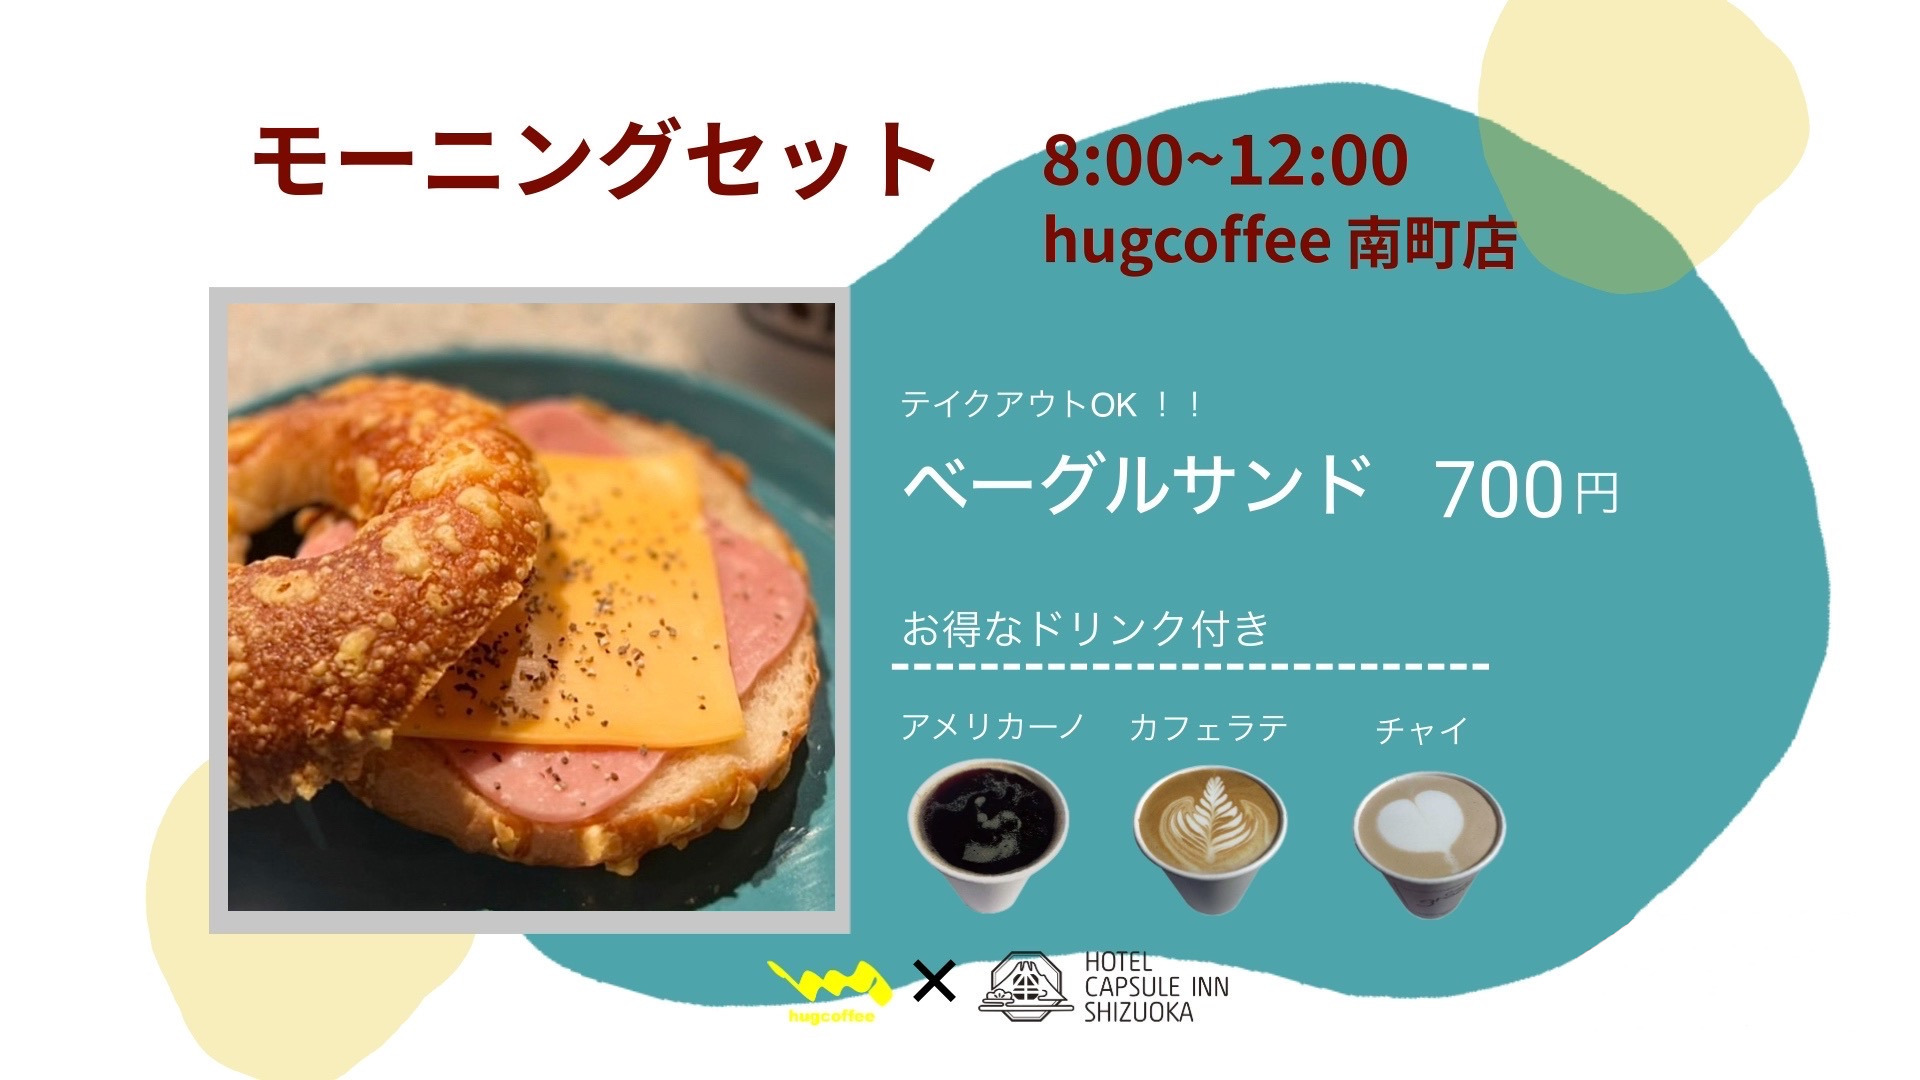 【朝食付き】大人気おしゃれカフェ hug coffee のモーニングセット付♪